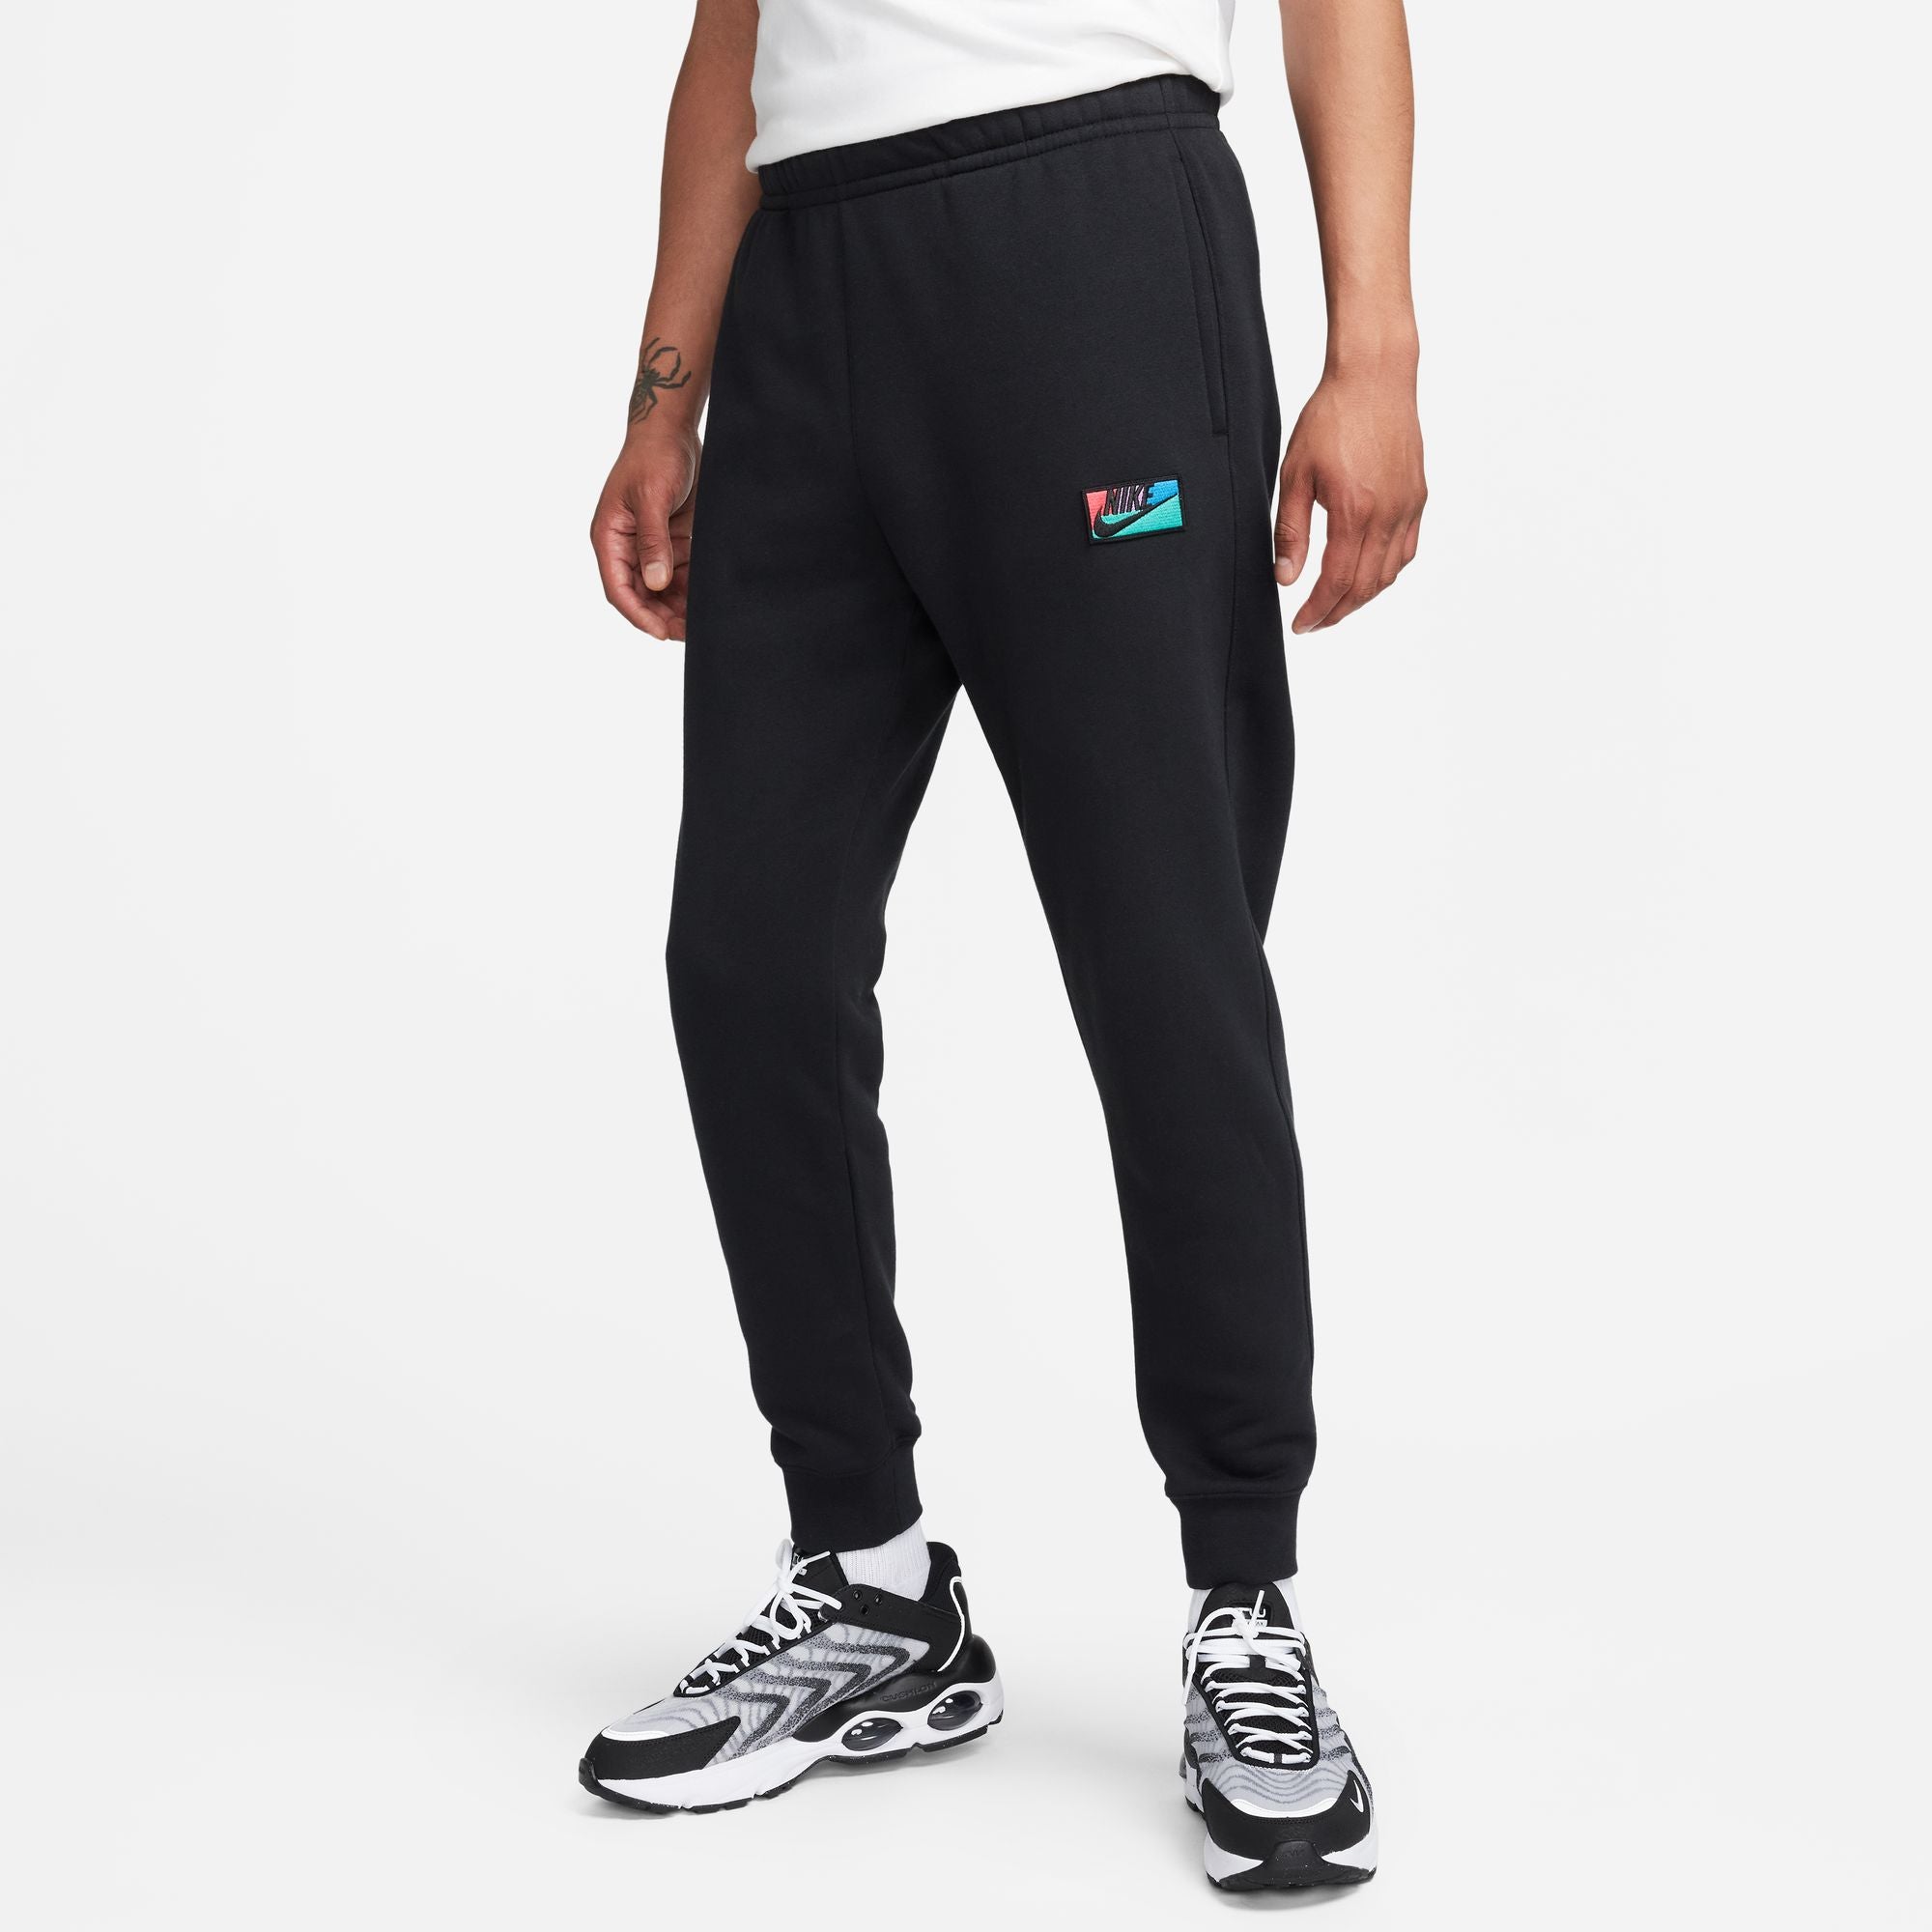 Nike, Pants, Early 200s Nike Cotton Sweatpants Sz Xl